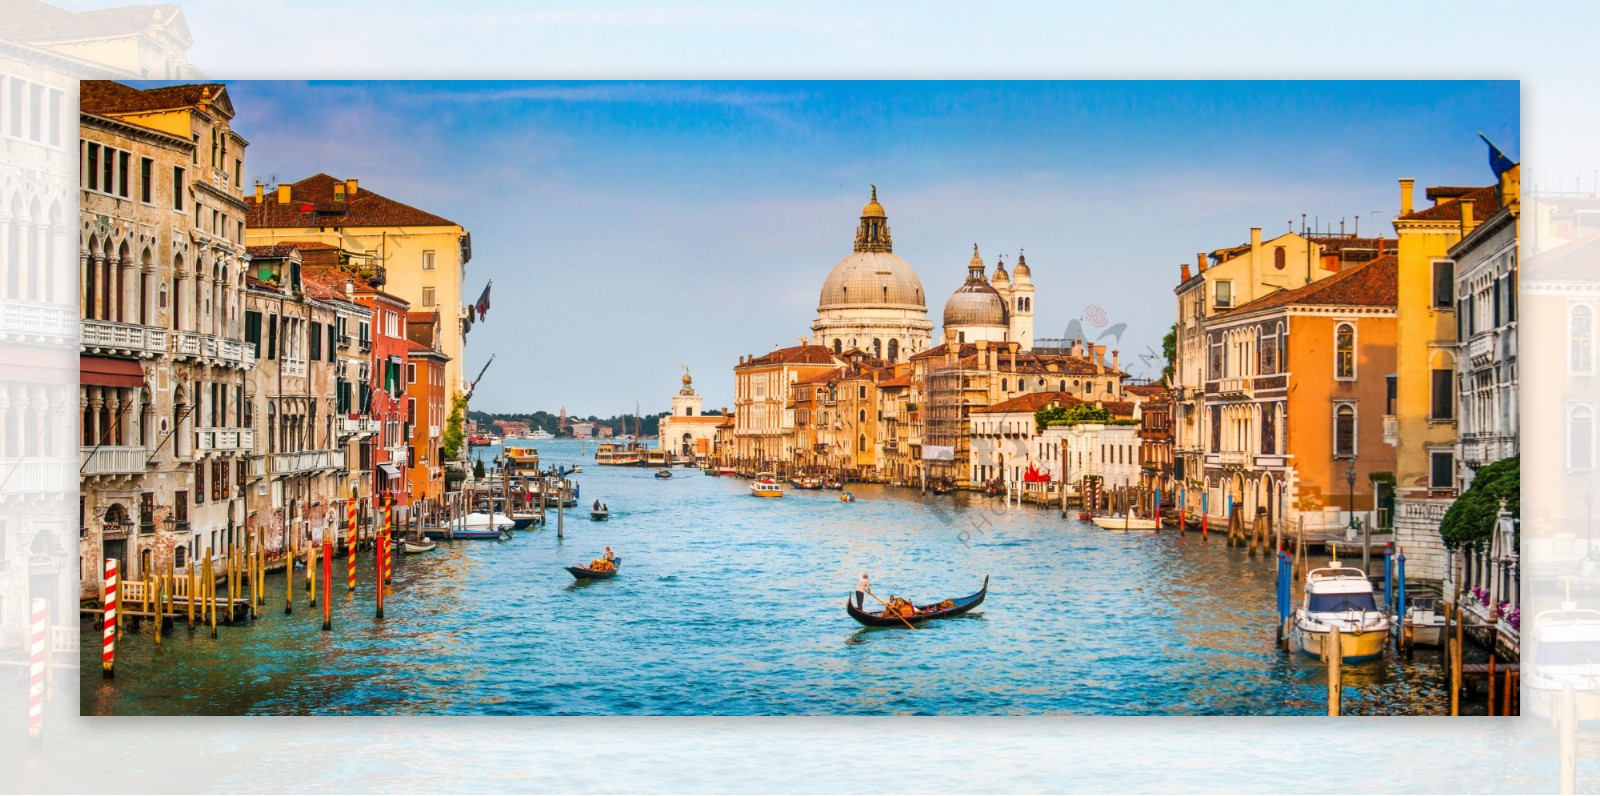 美丽水城威尼斯风景图片